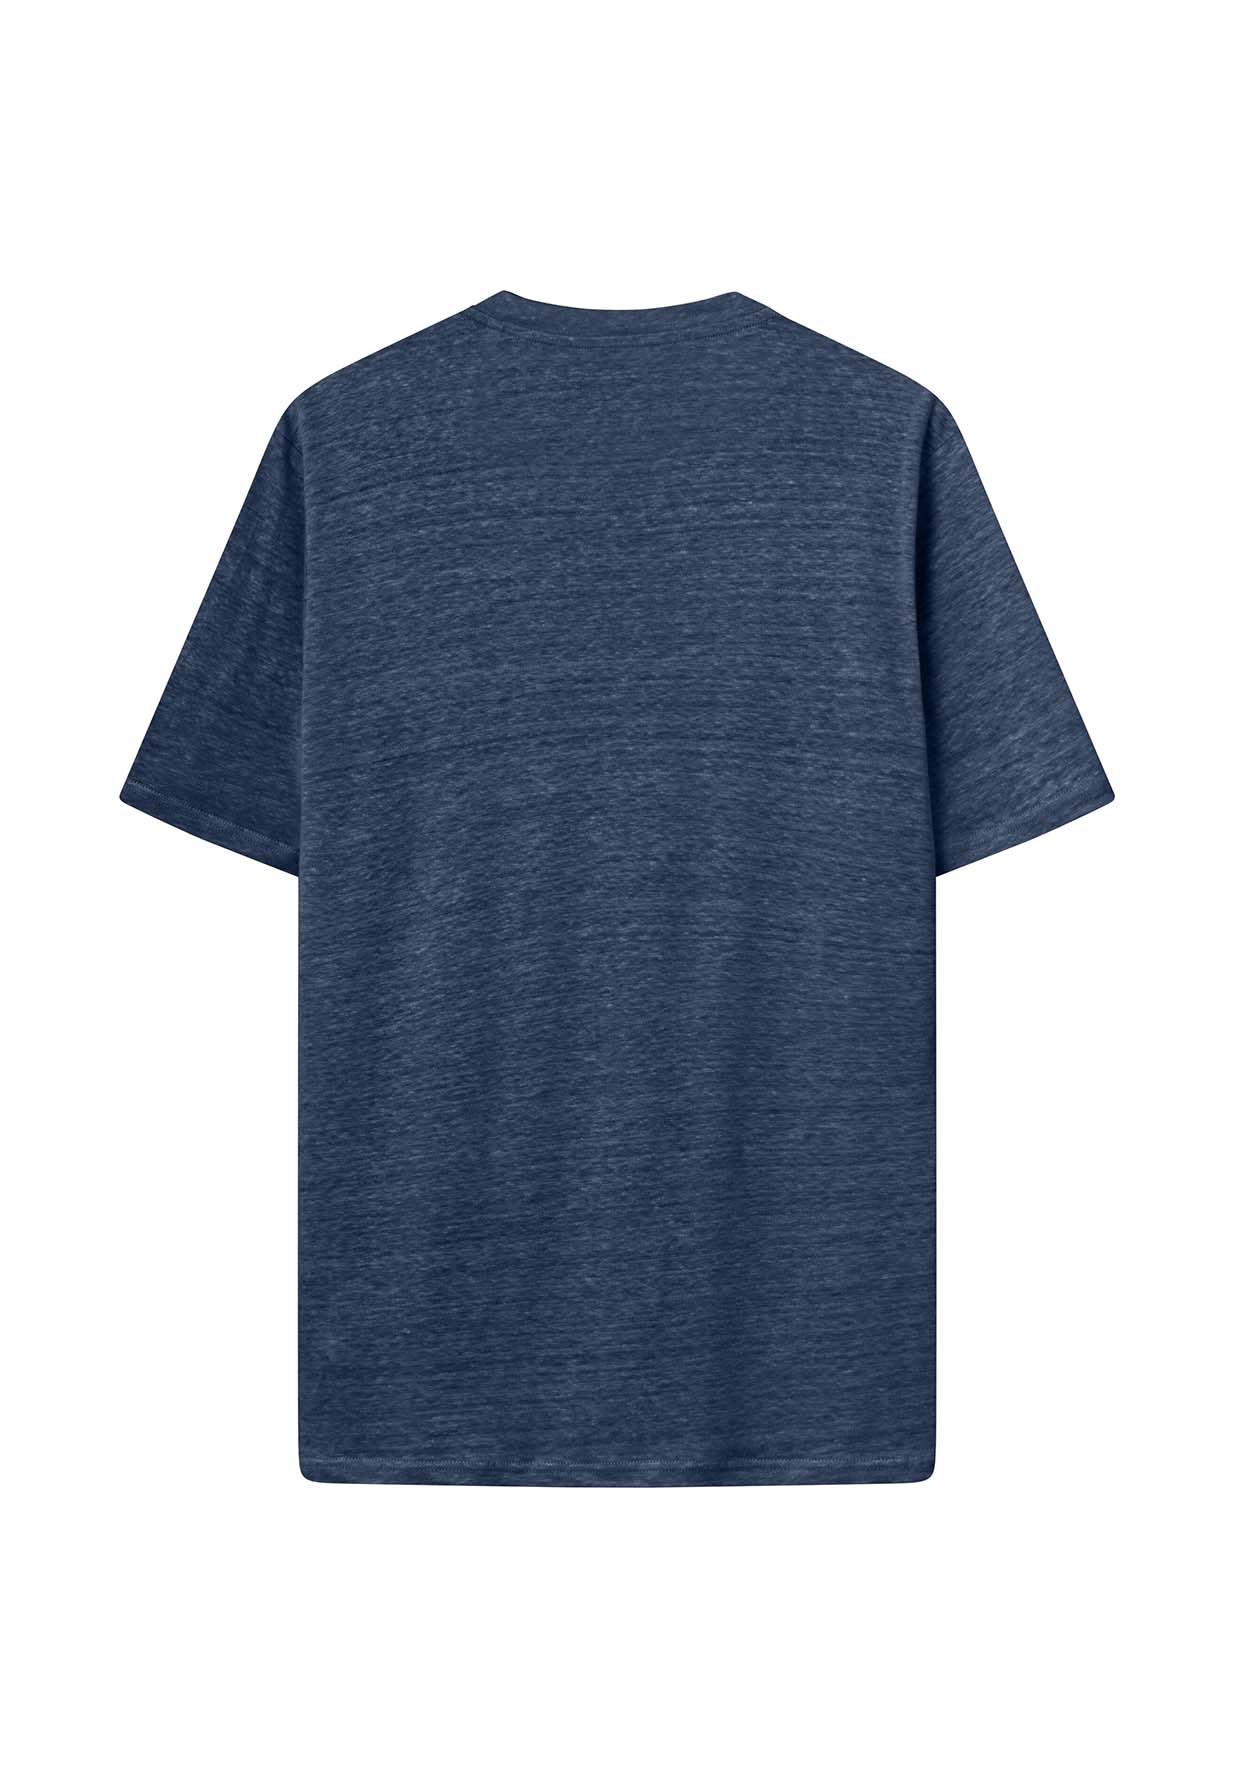 KNOWLEDGECOTTON APPAREL Linen T-Shirt total eclipse S